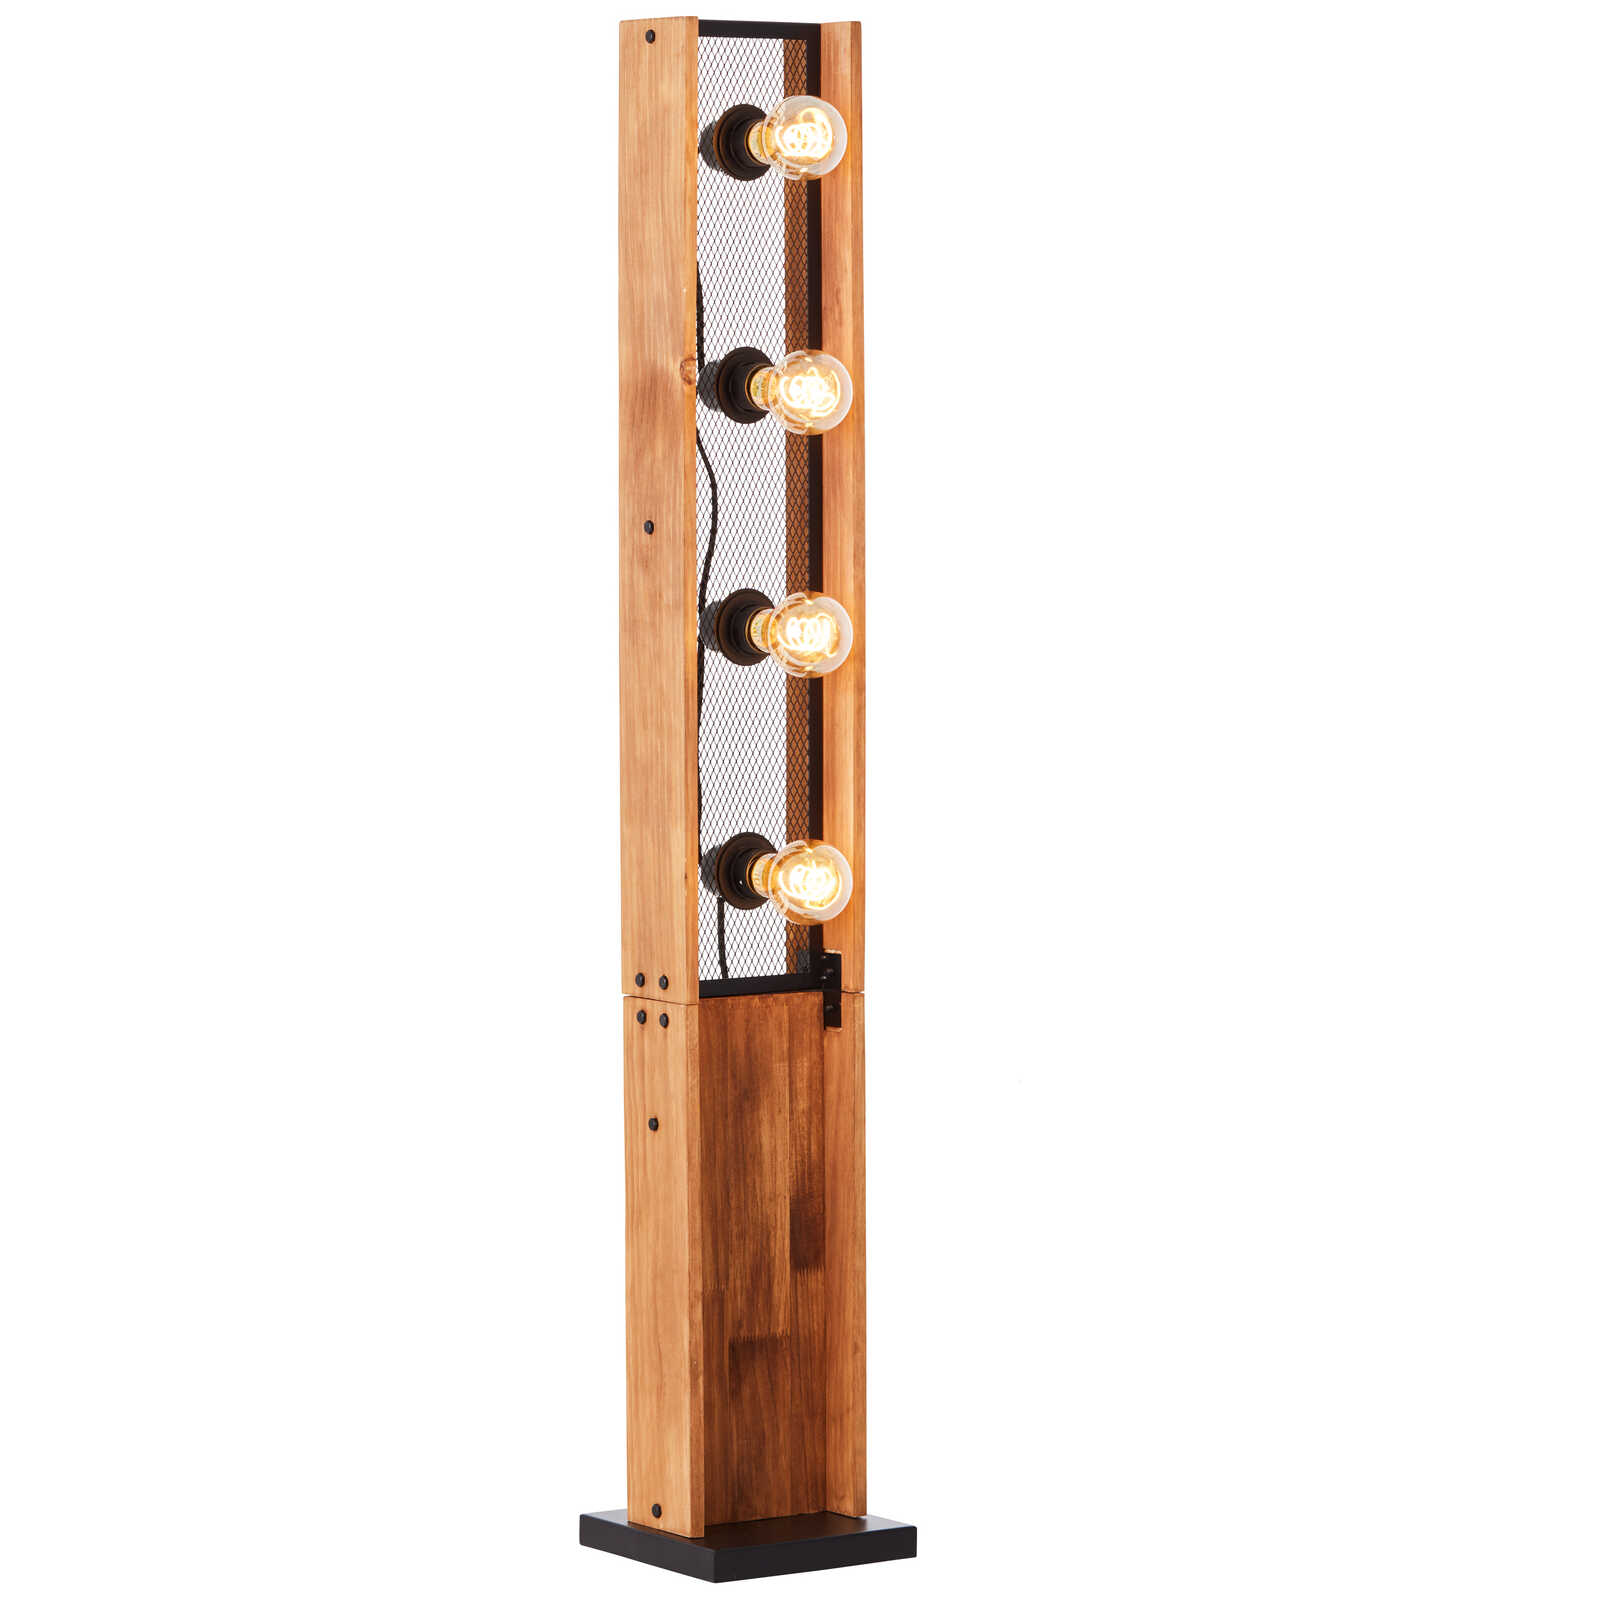             Wooden floor lamp - Daniel 4 - Brown
        